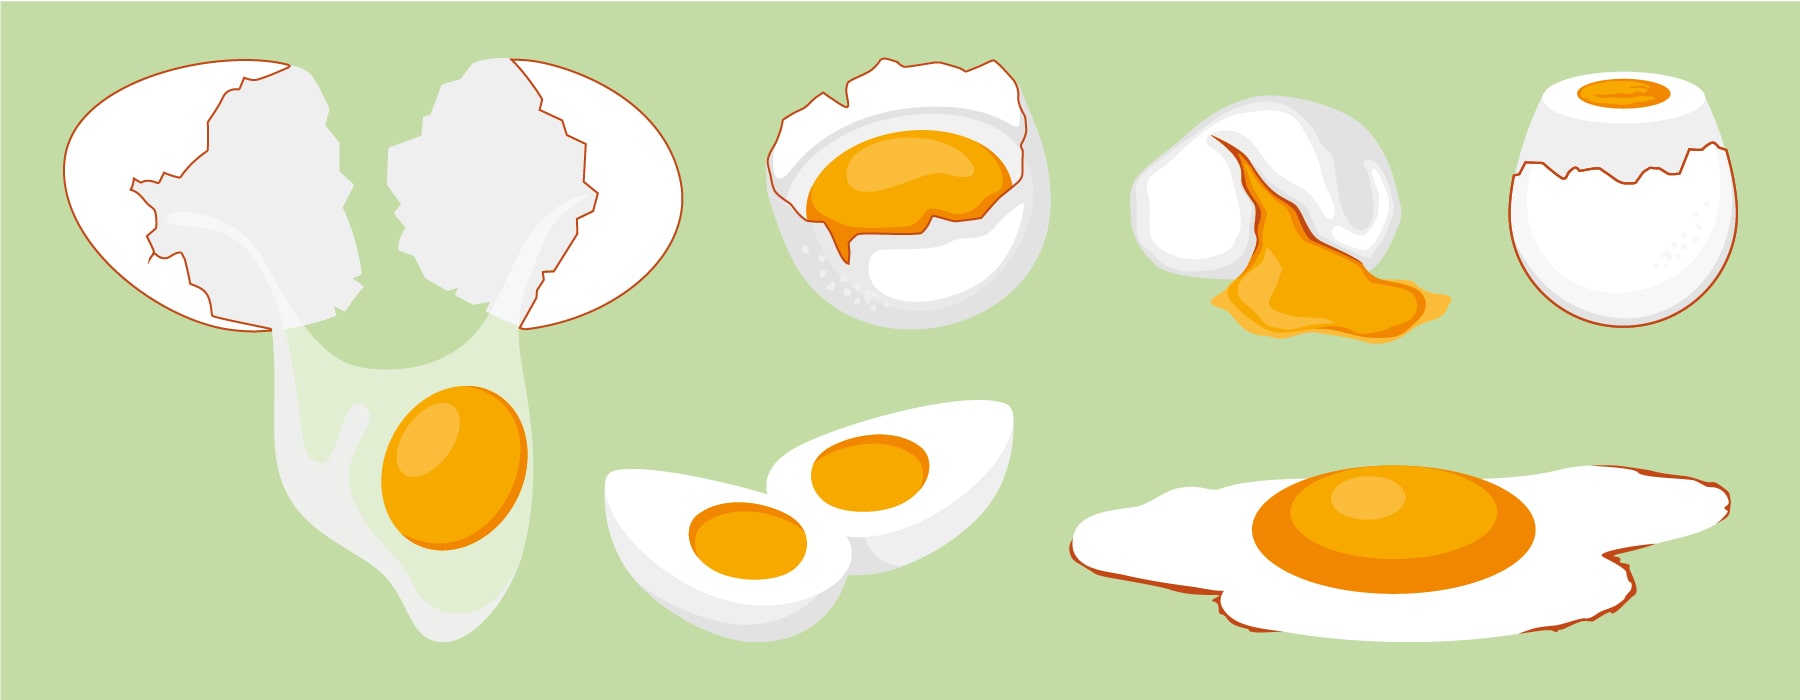 способы приготовления яиц